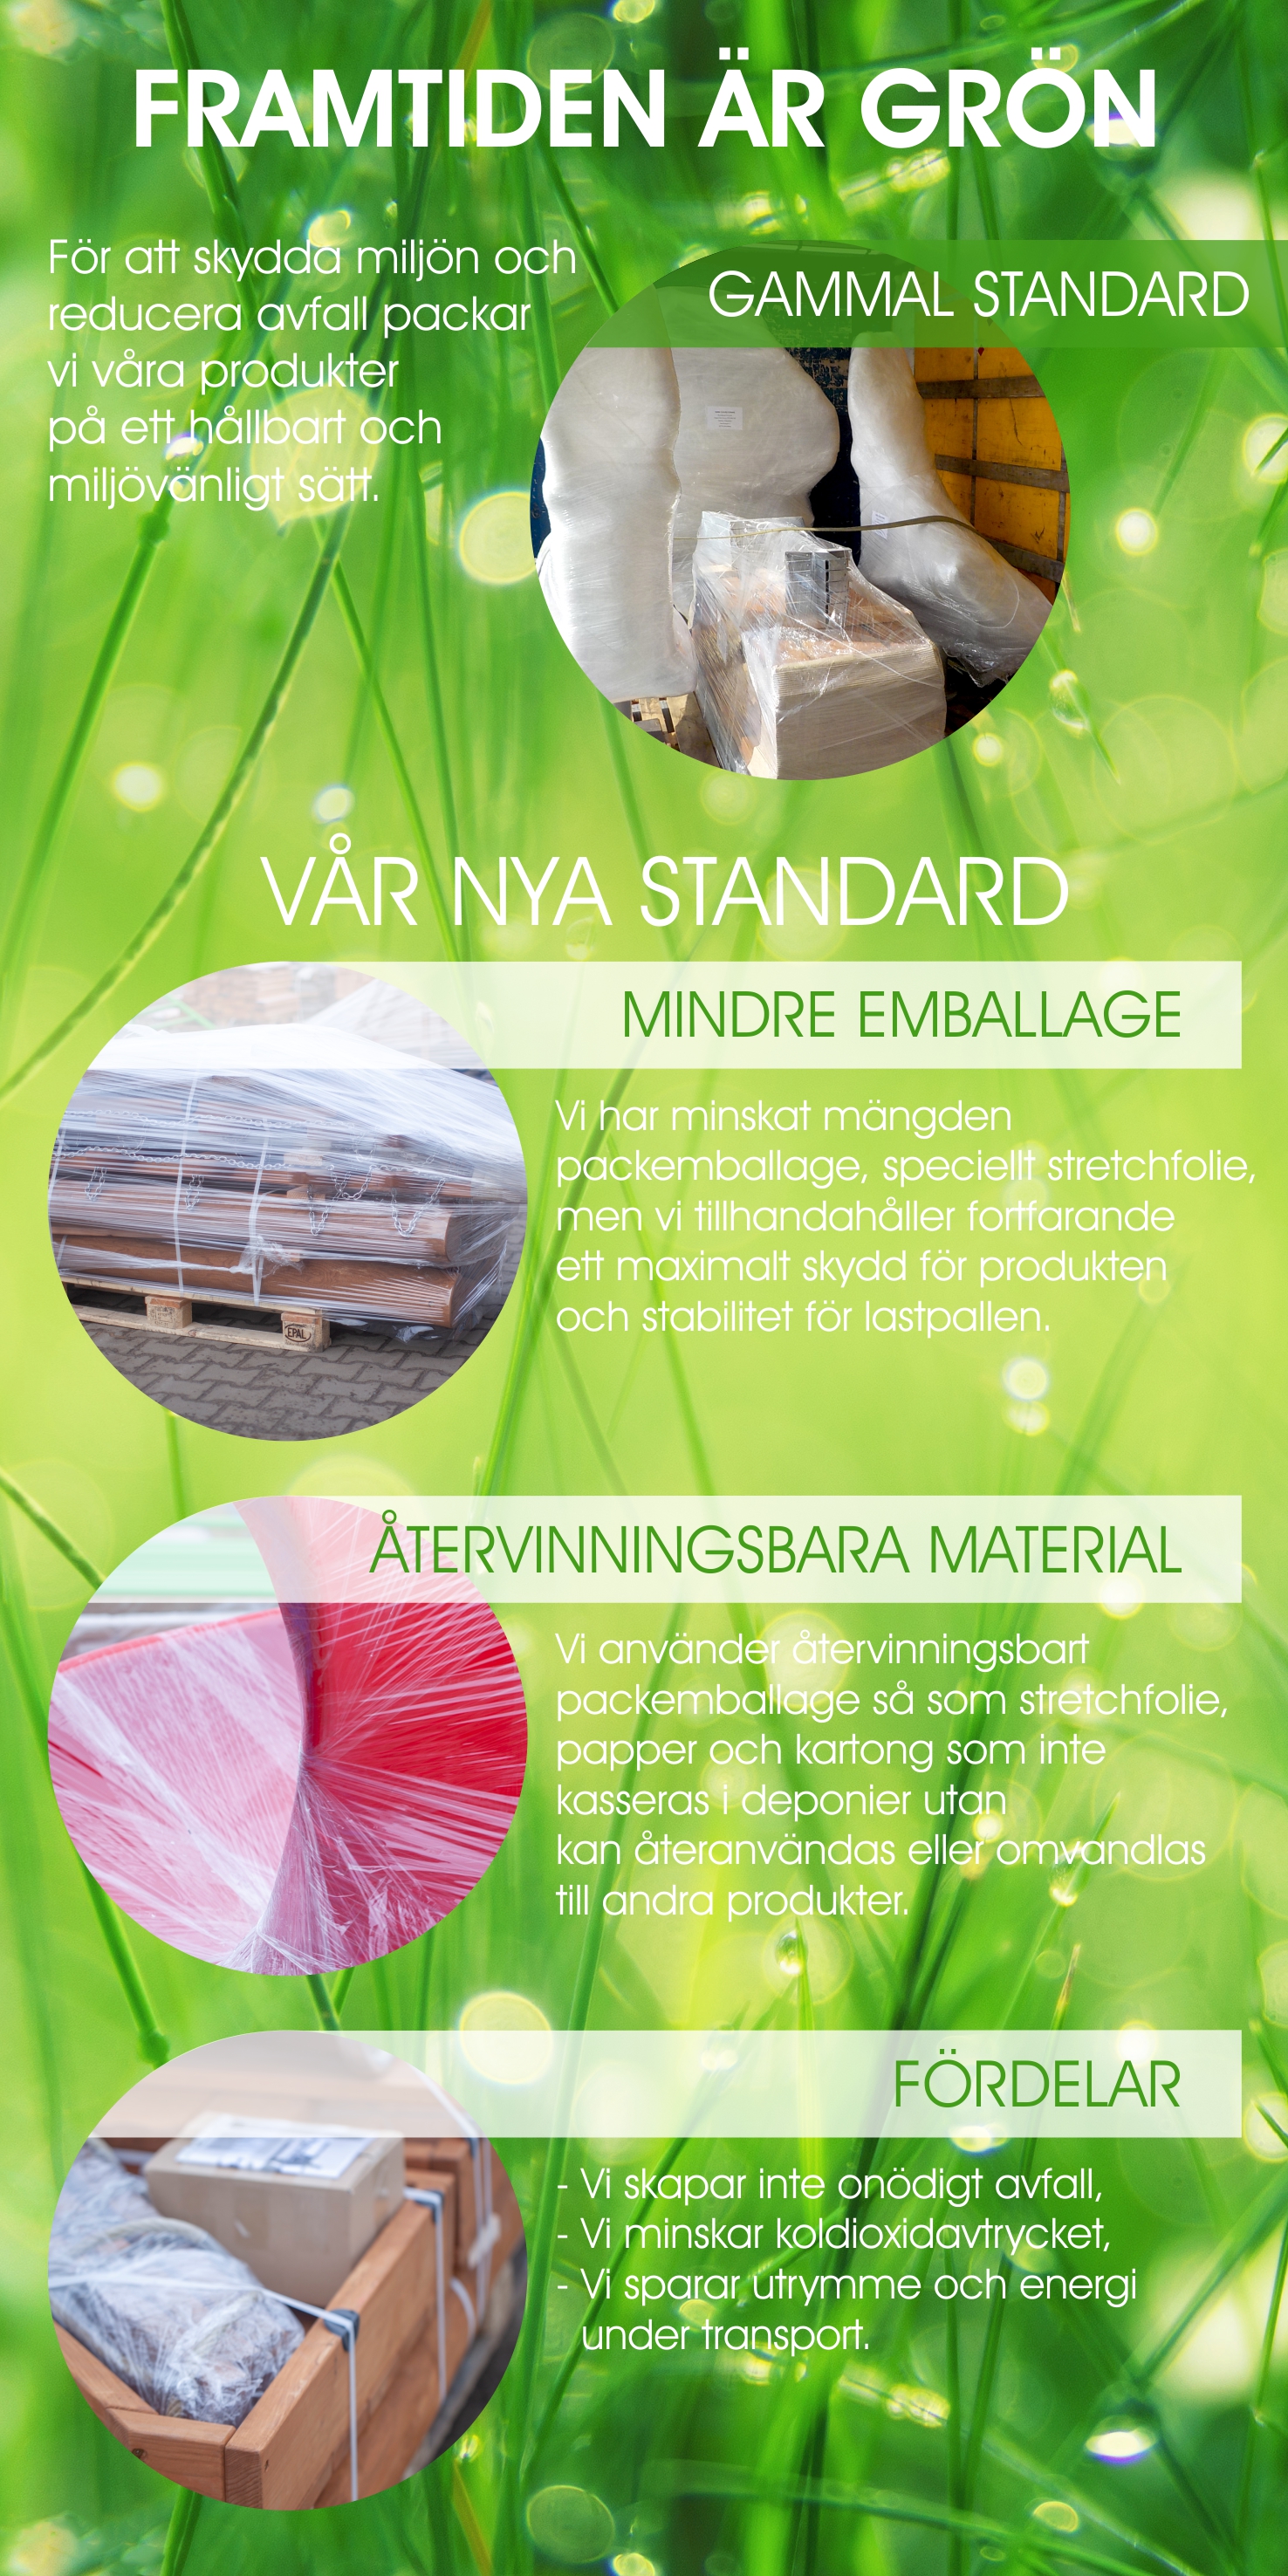 Eco packaging in Lars Laj